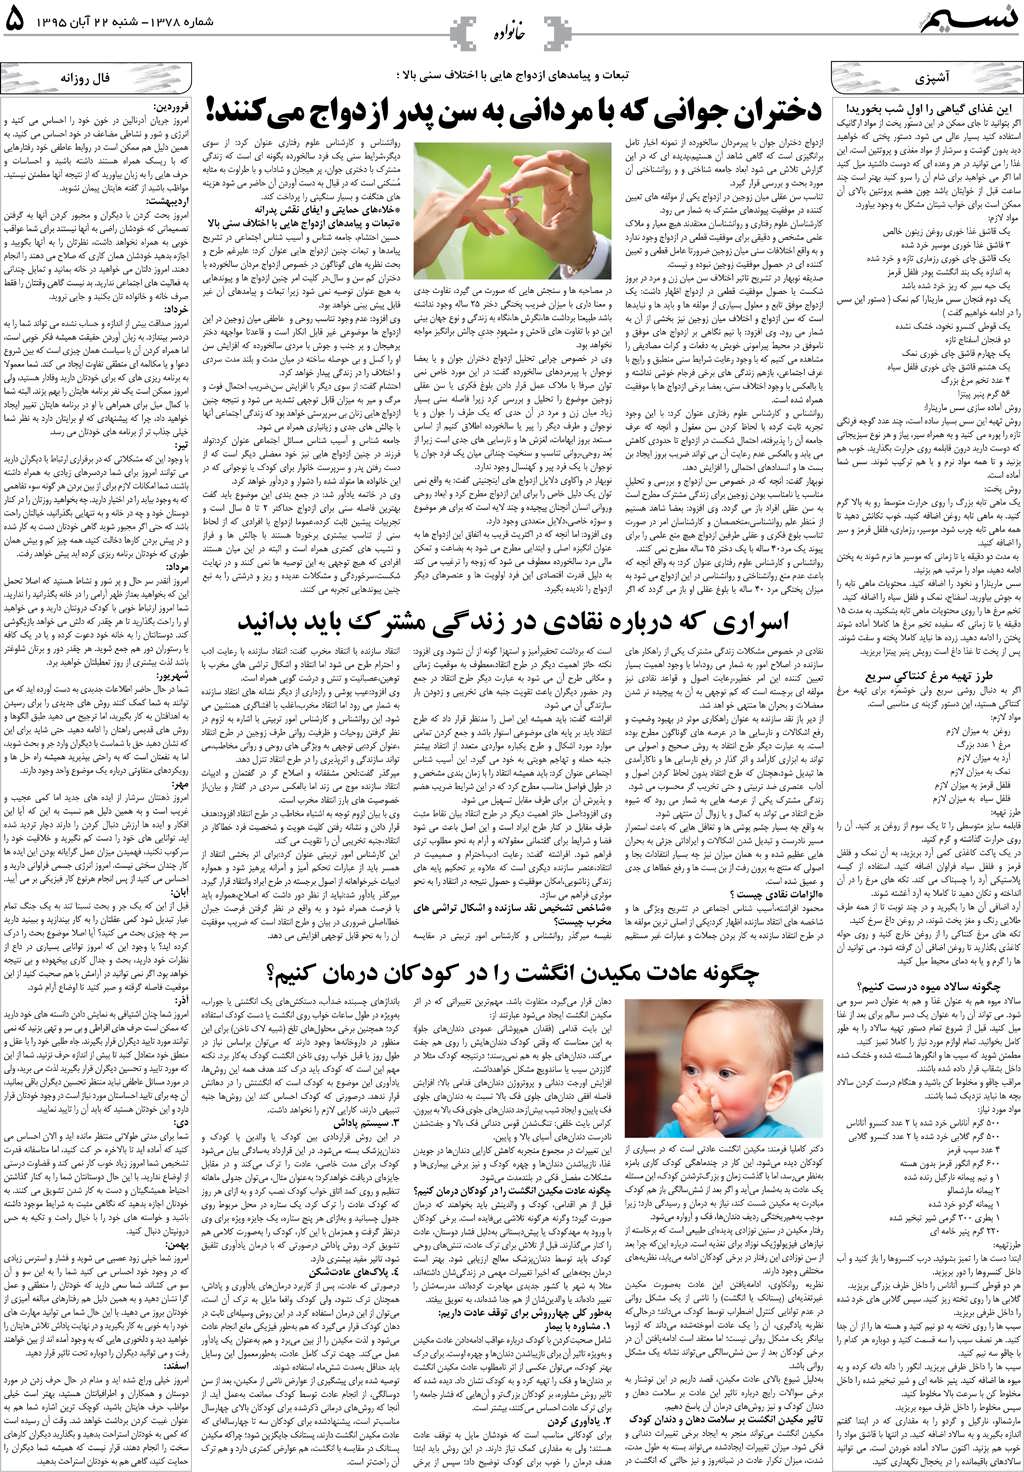 صفحه خانواده روزنامه نسیم شماره 1378